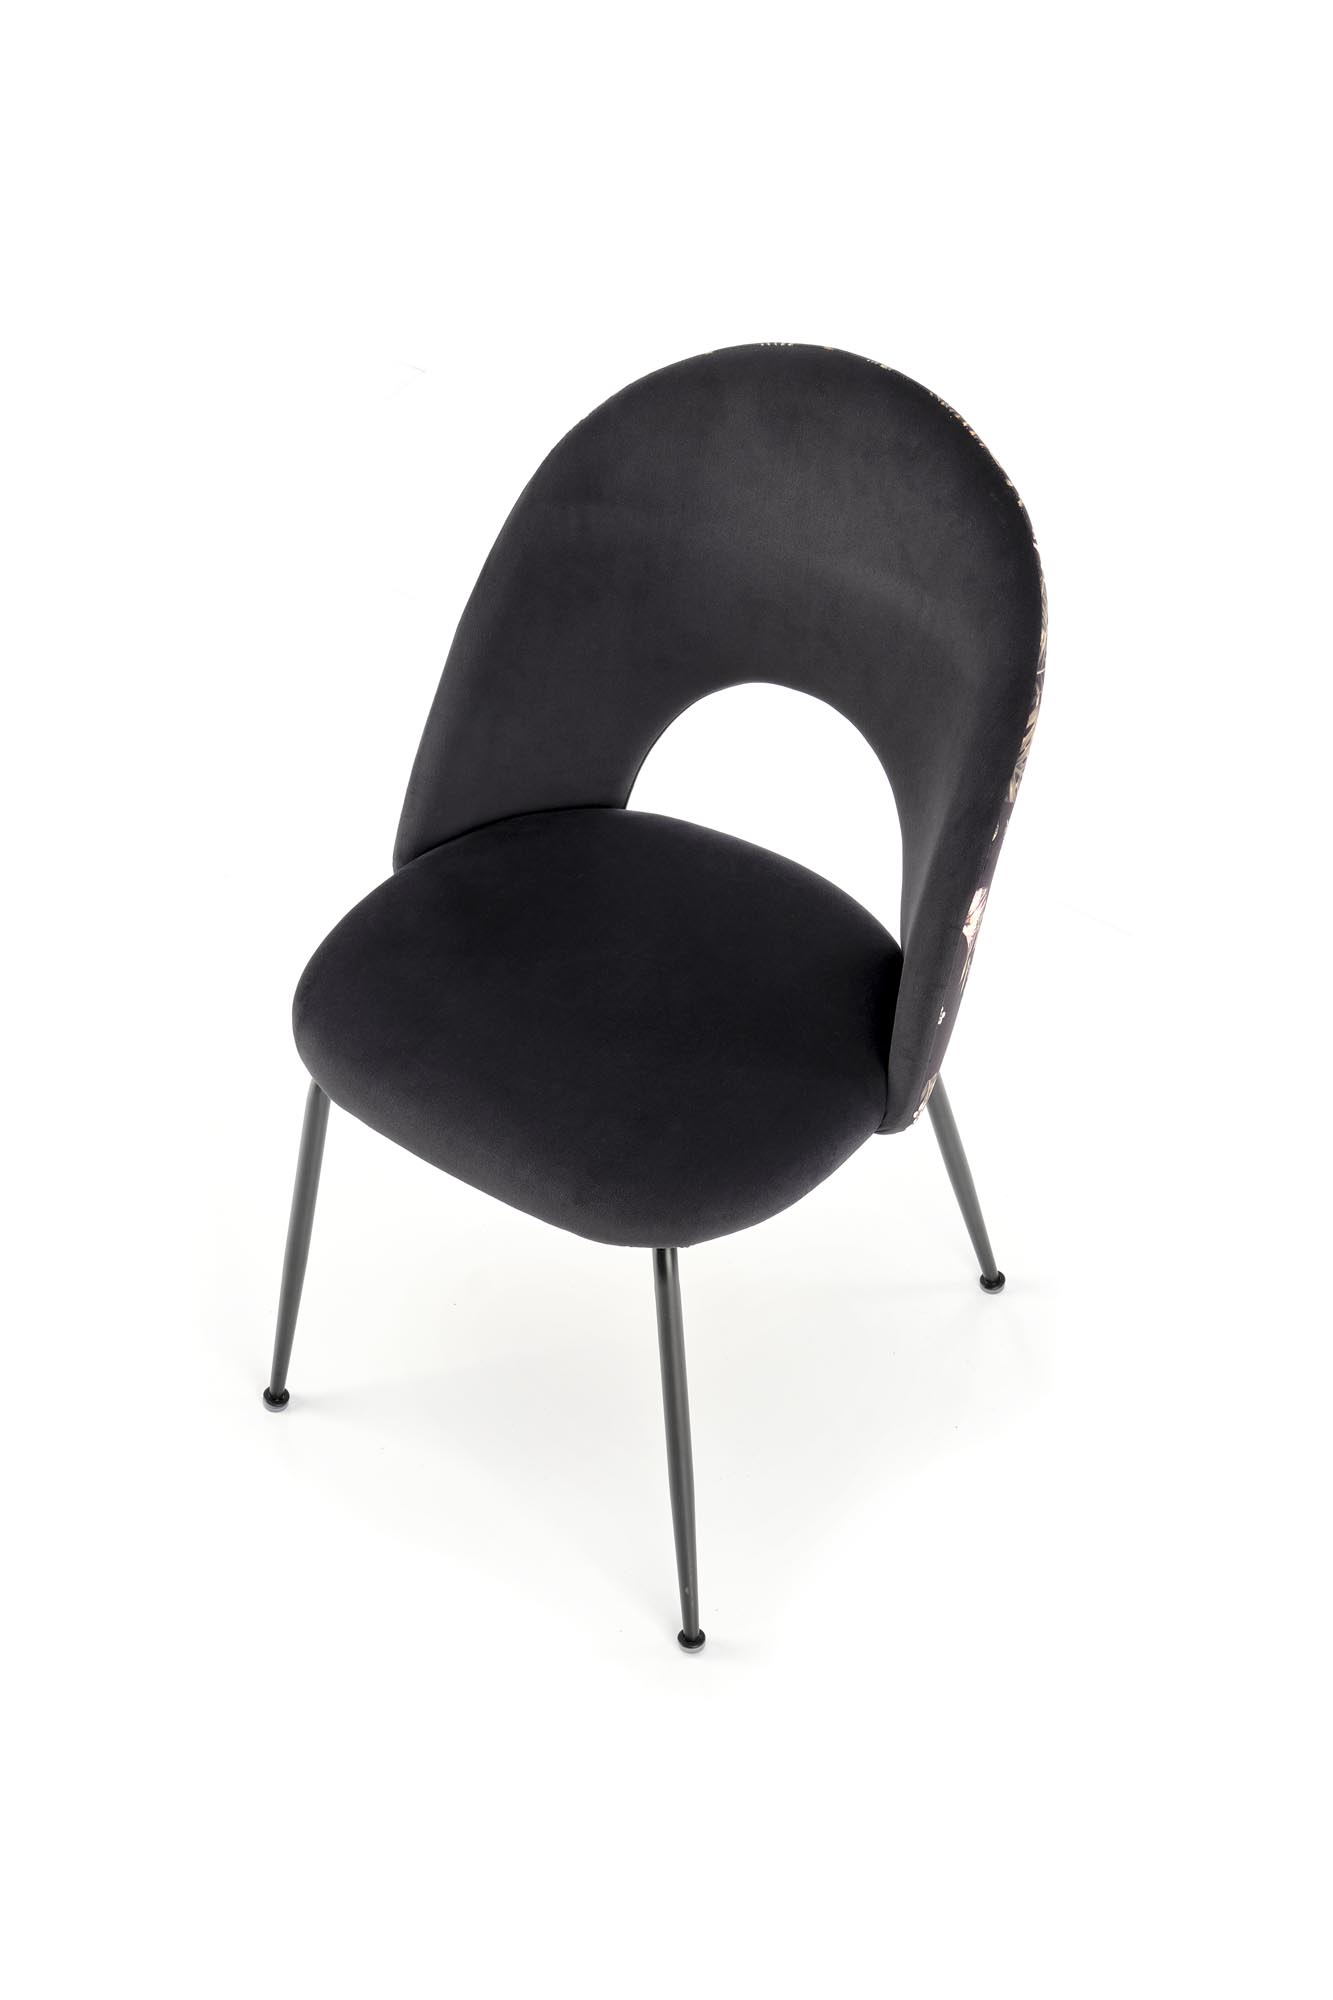 Scaun tapițat K505 - multicolor Židle čalouněné k505 - Černý